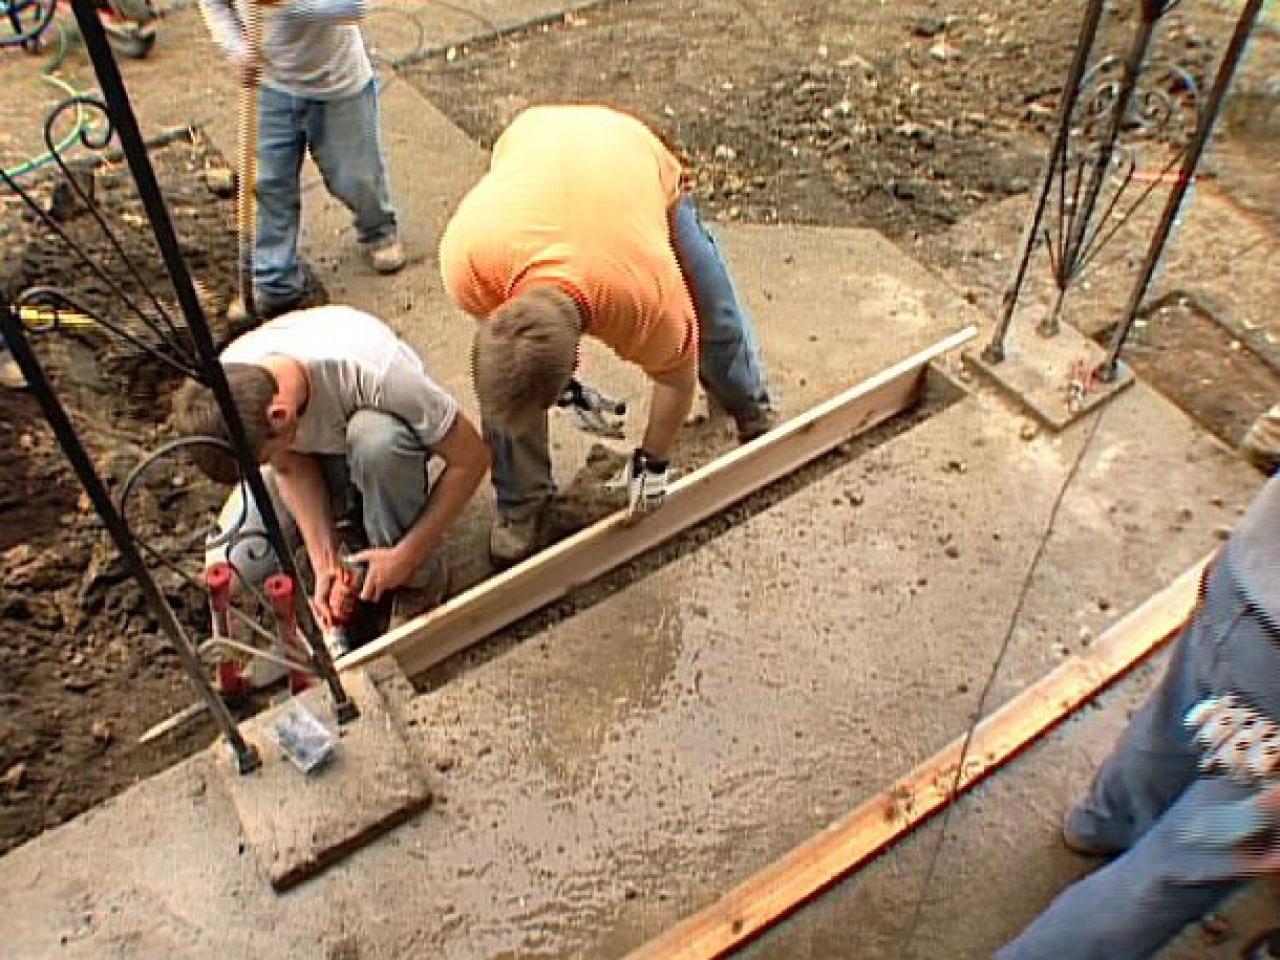 How do you repair concrete steps?